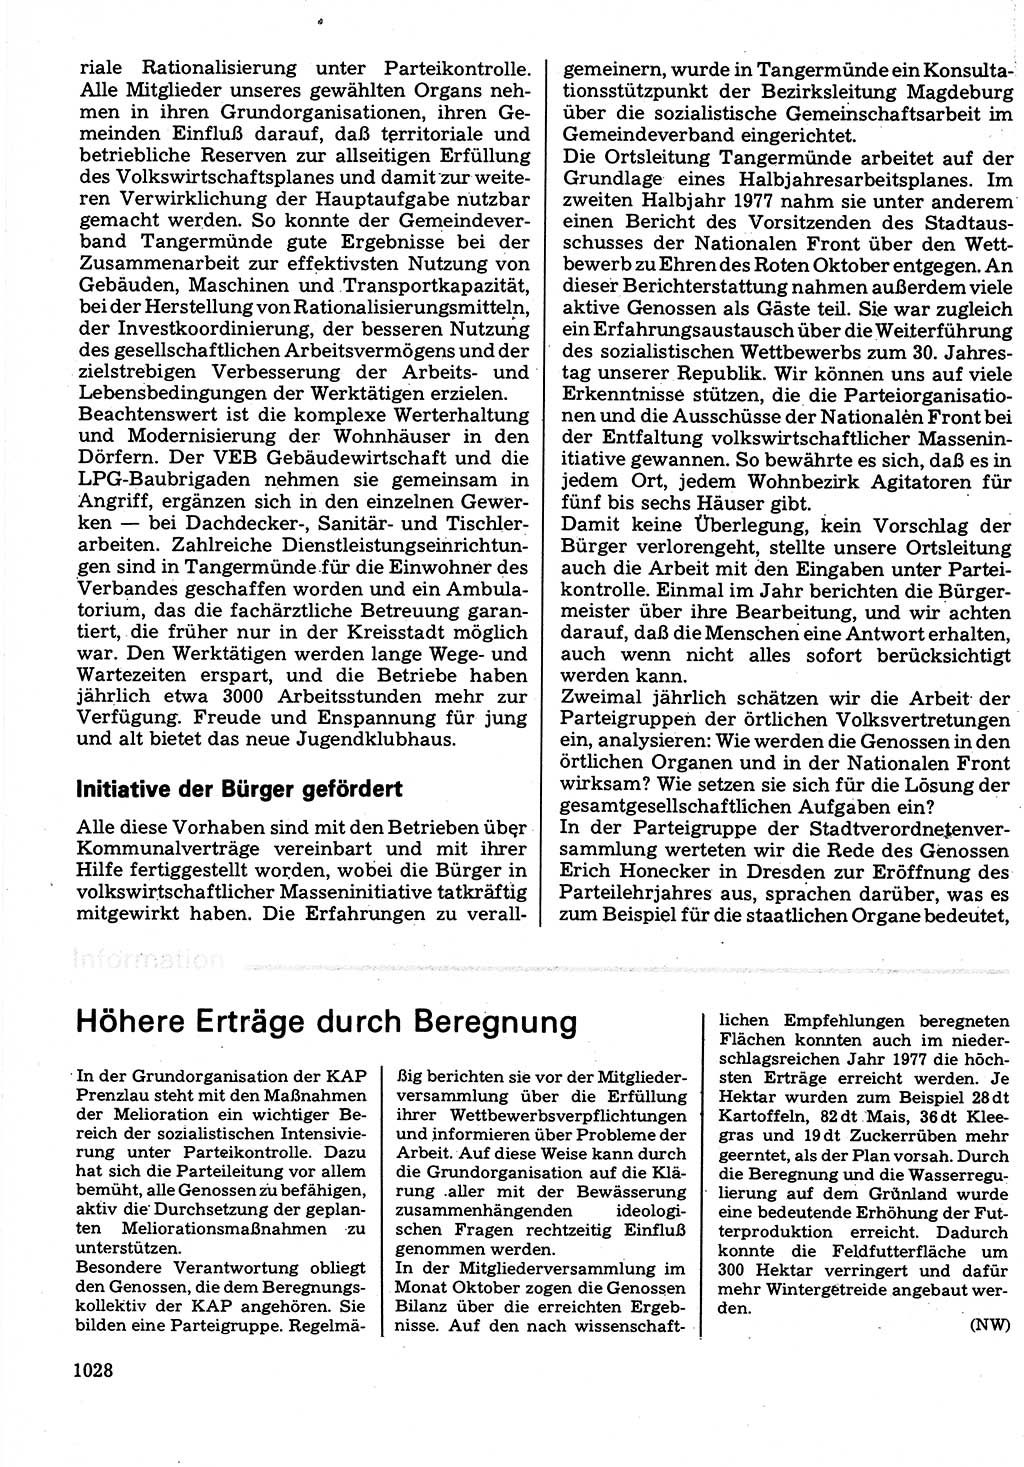 Neuer Weg (NW), Organ des Zentralkomitees (ZK) der SED (Sozialistische Einheitspartei Deutschlands) für Fragen des Parteilebens, 32. Jahrgang [Deutsche Demokratische Republik (DDR)] 1977, Seite 1028 (NW ZK SED DDR 1977, S. 1028)